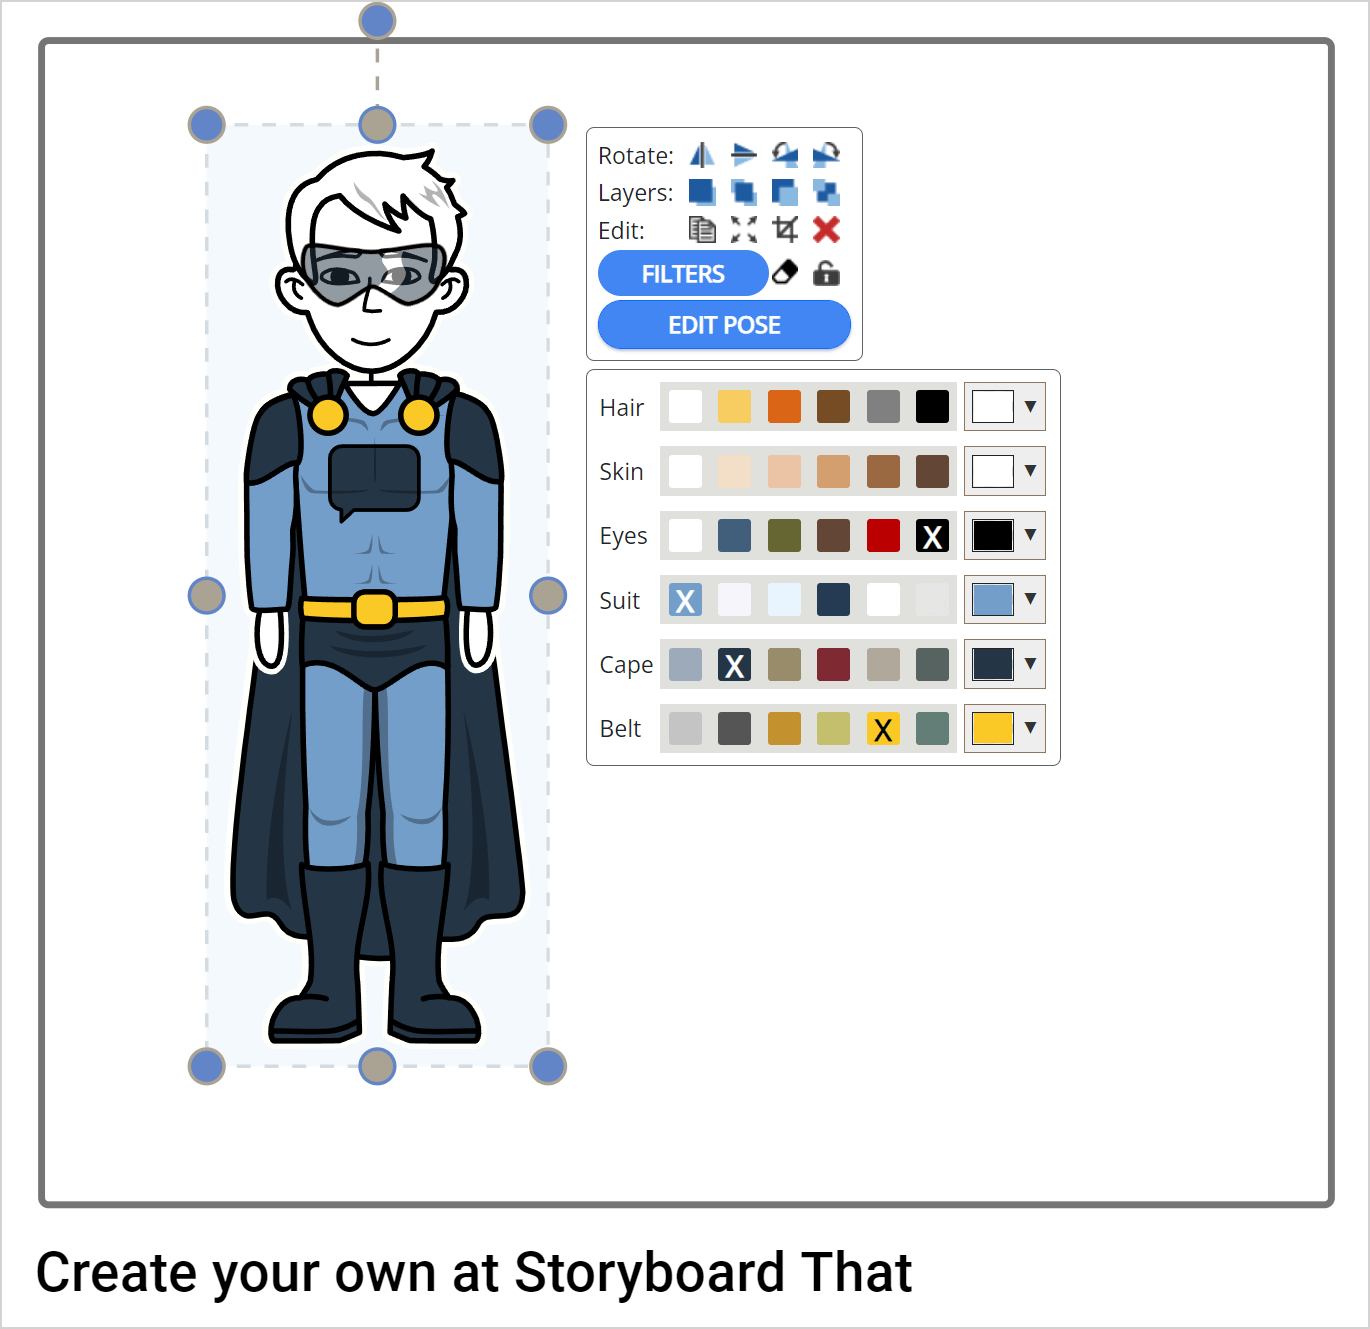  Што такое Storyboard That і як гэта працуе: лепшыя парады і рэкамендацыі